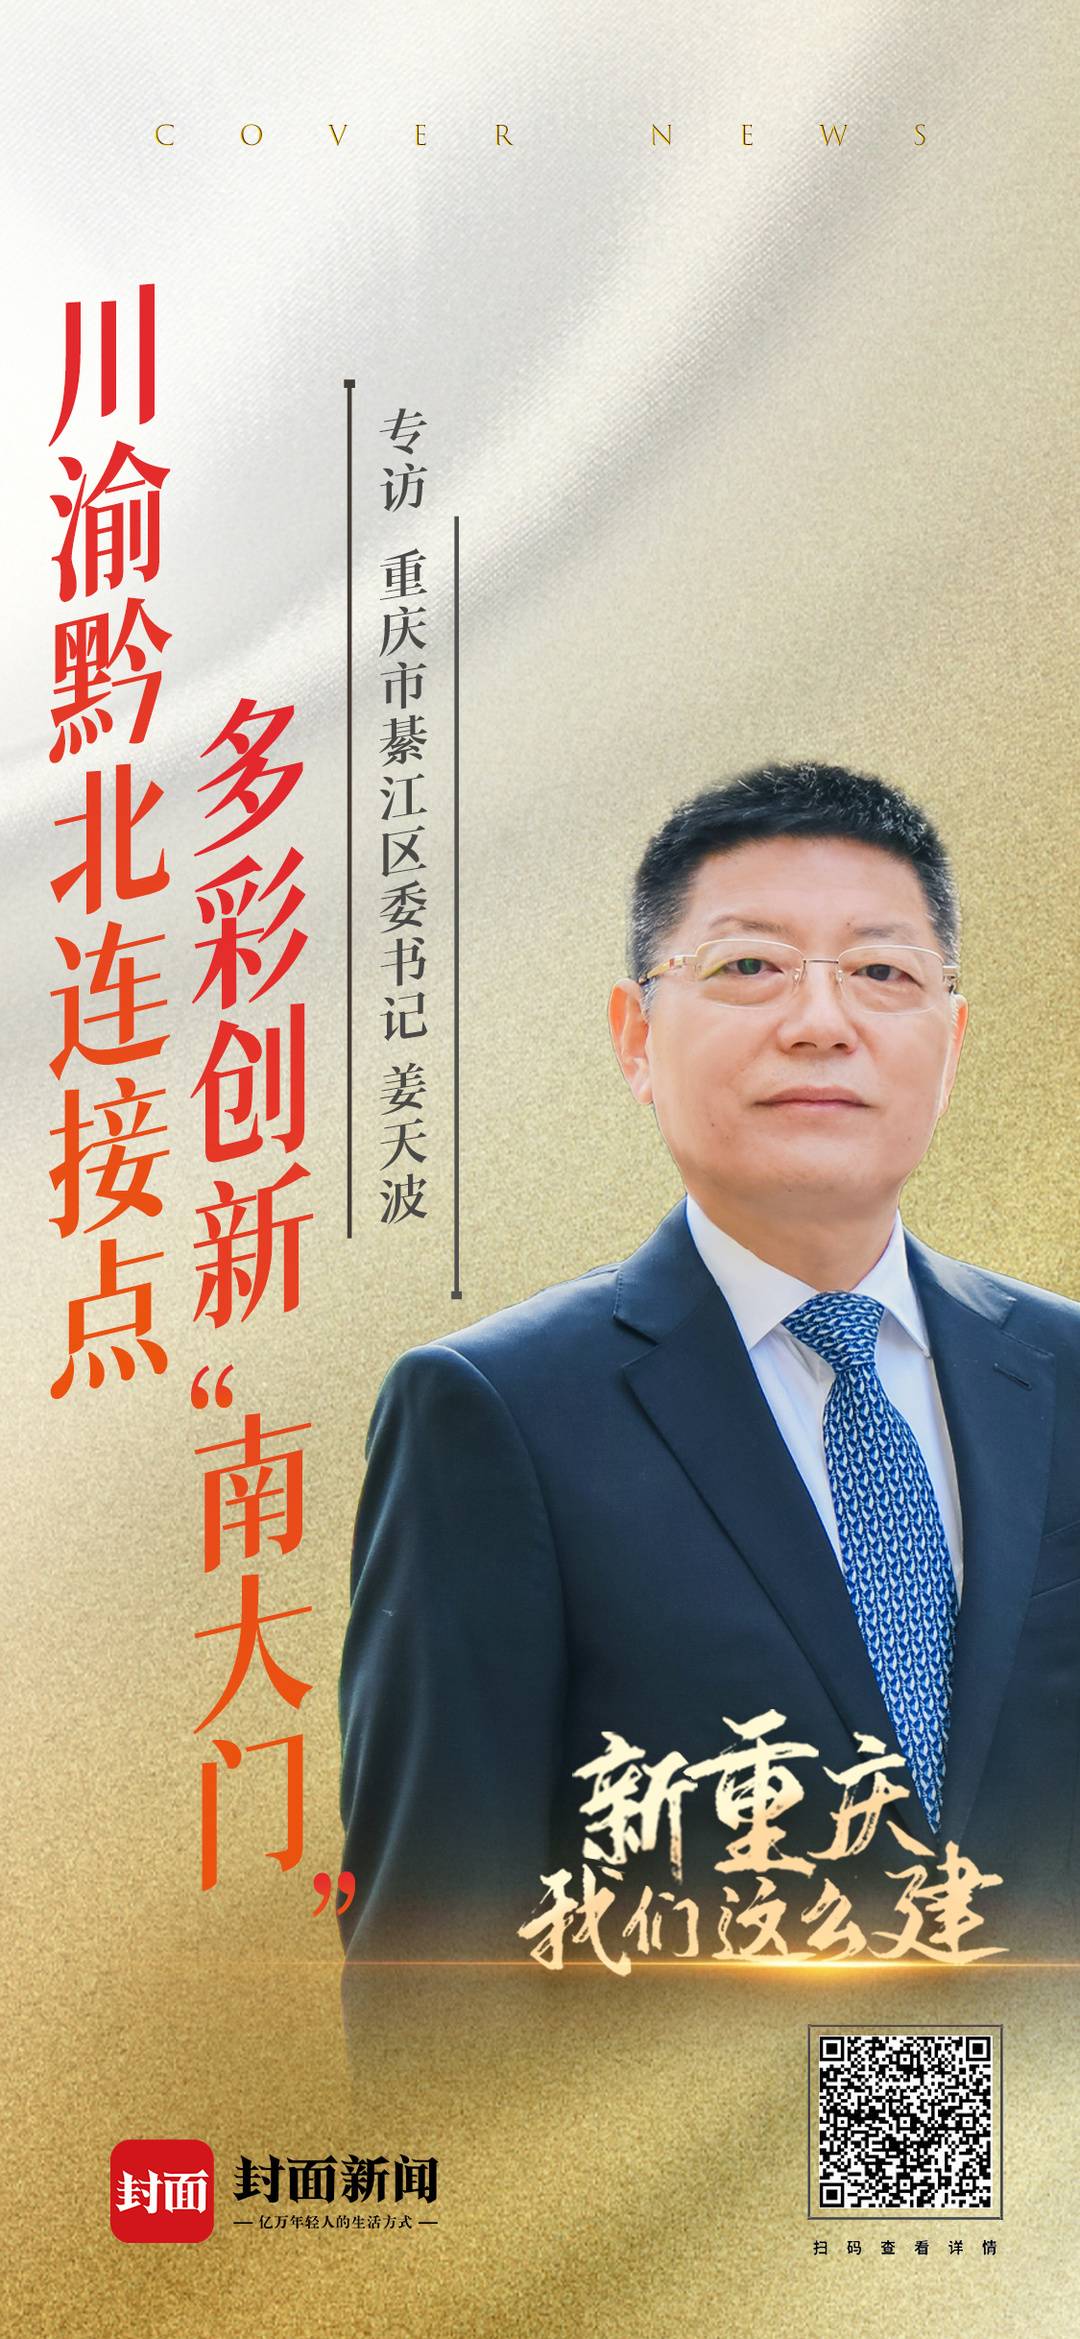 重庆市綦江区委书记姜天波:抓双城经济圈机遇 创多彩綦江·创新之城